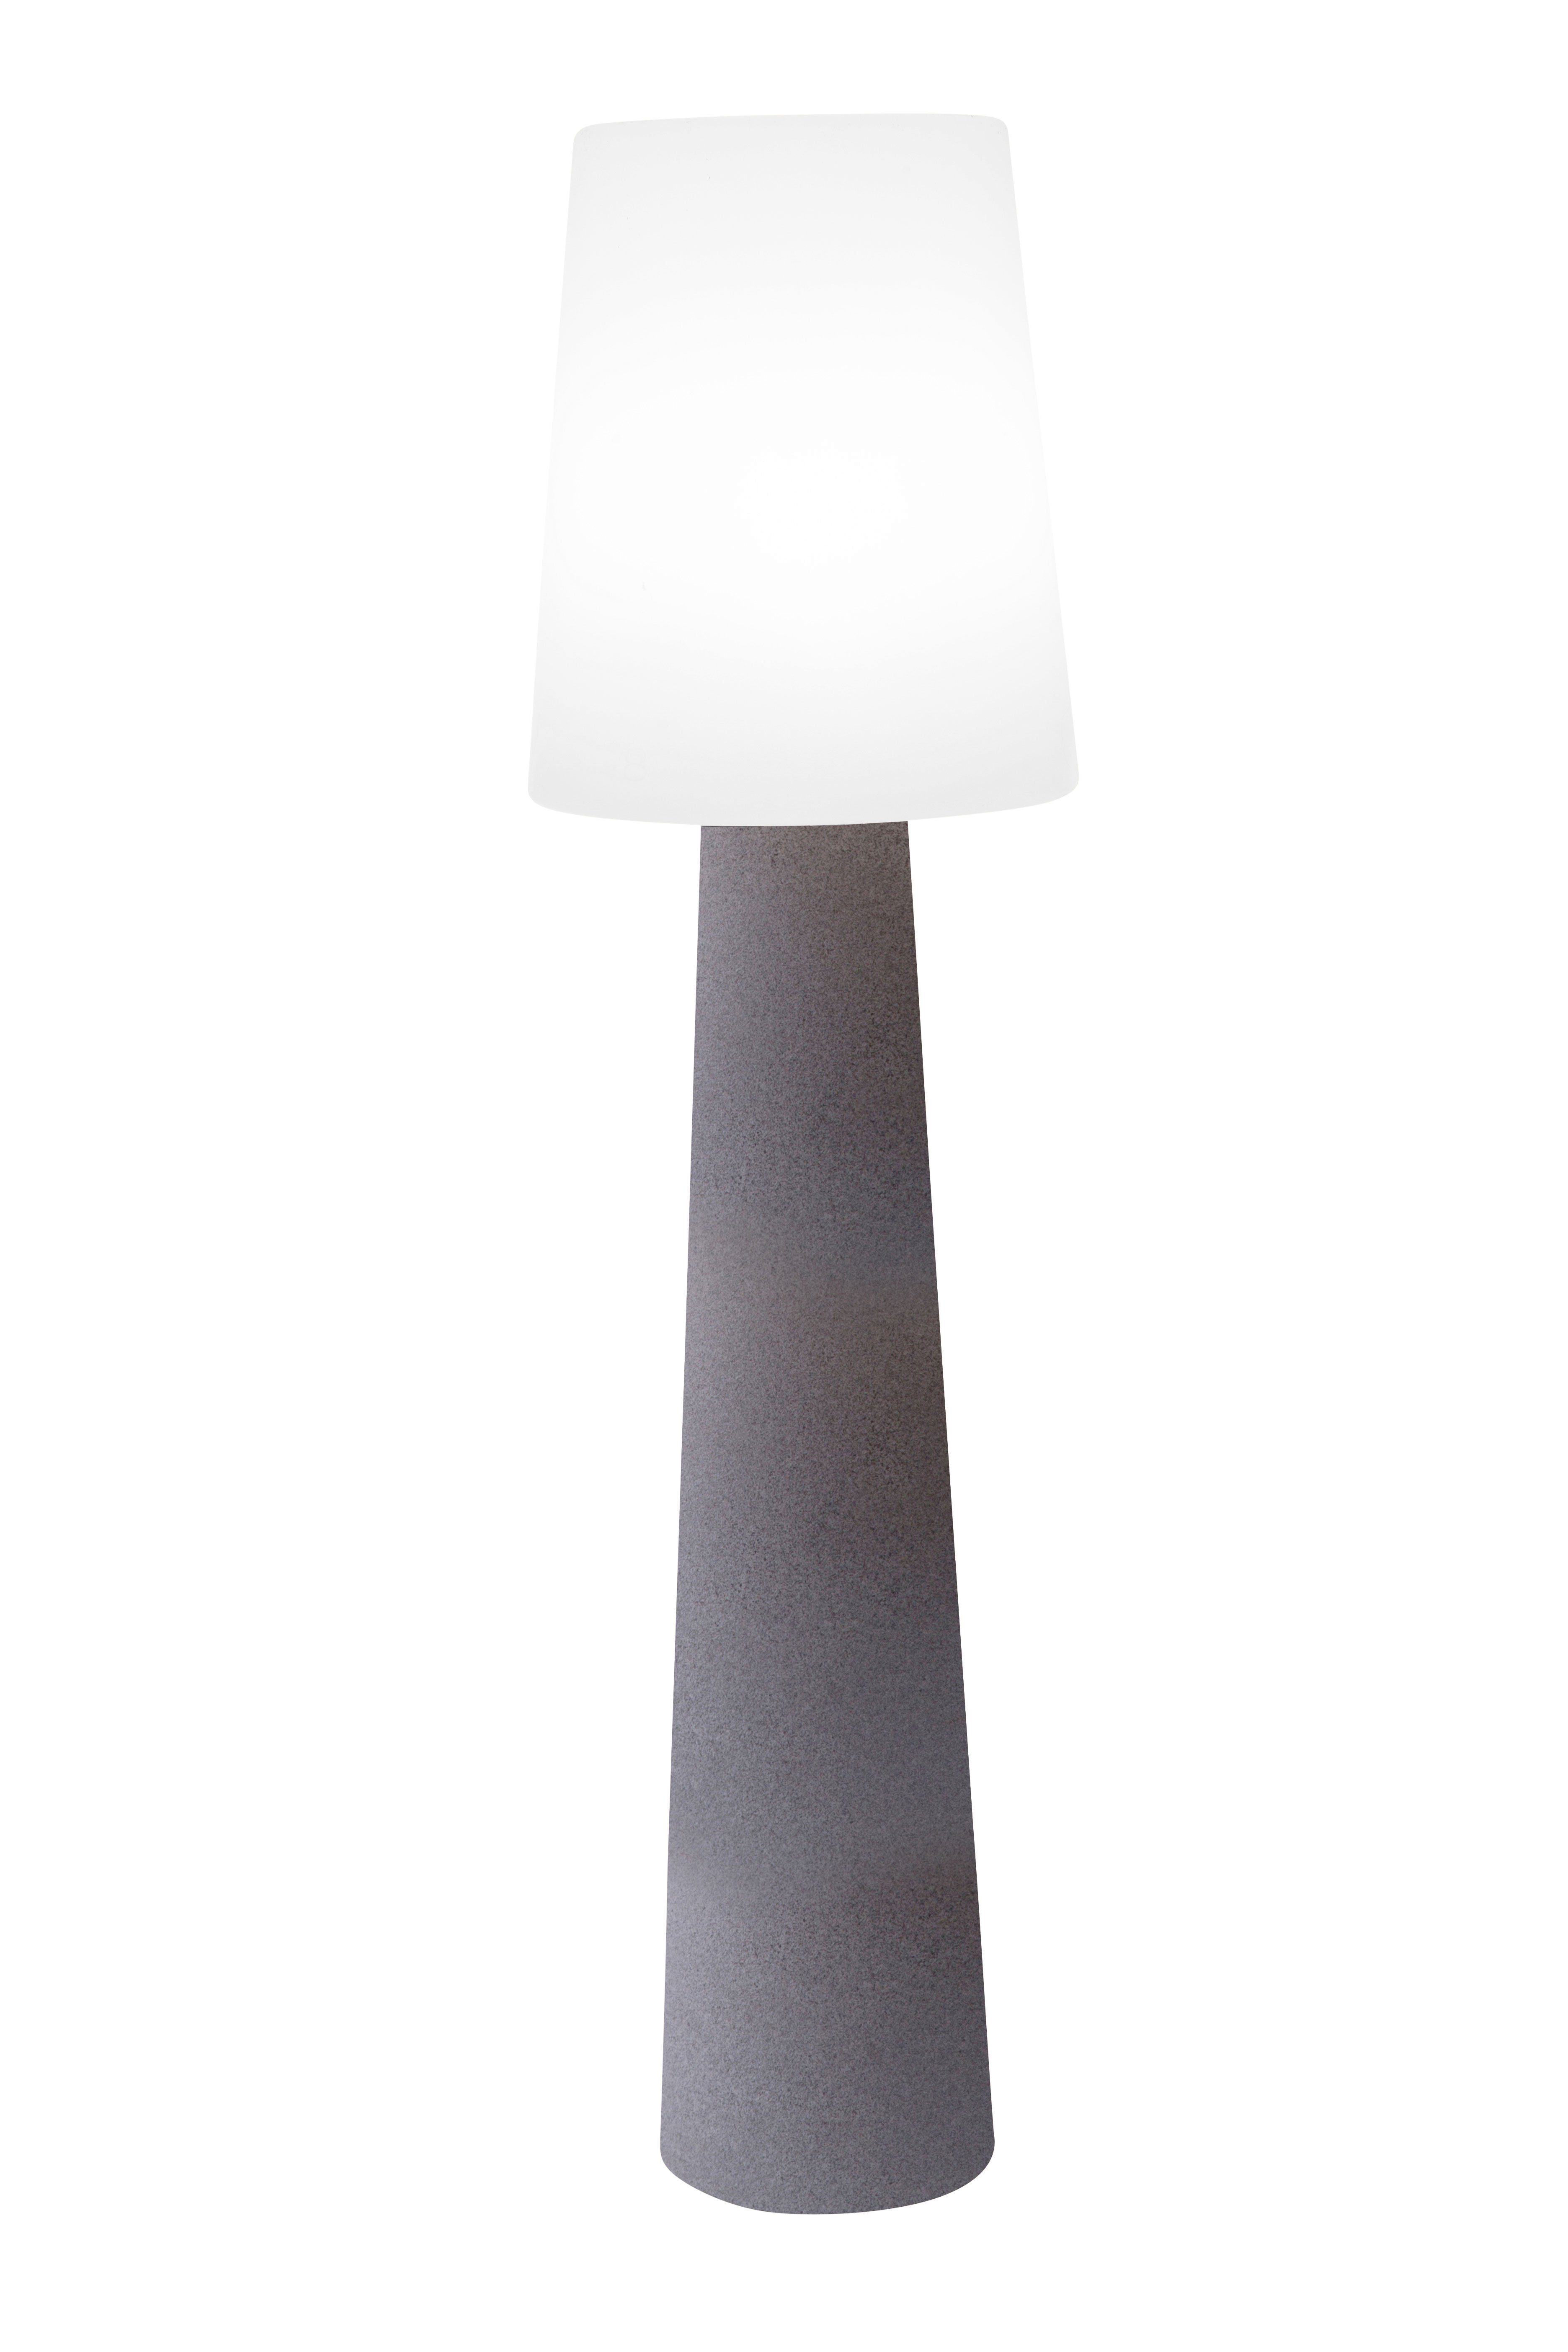 8 seasons design LED Stehlampe Shining No. 1, LED WW, LED wechselbar, warmweiß, 160 cm stein für In- und Outdoor